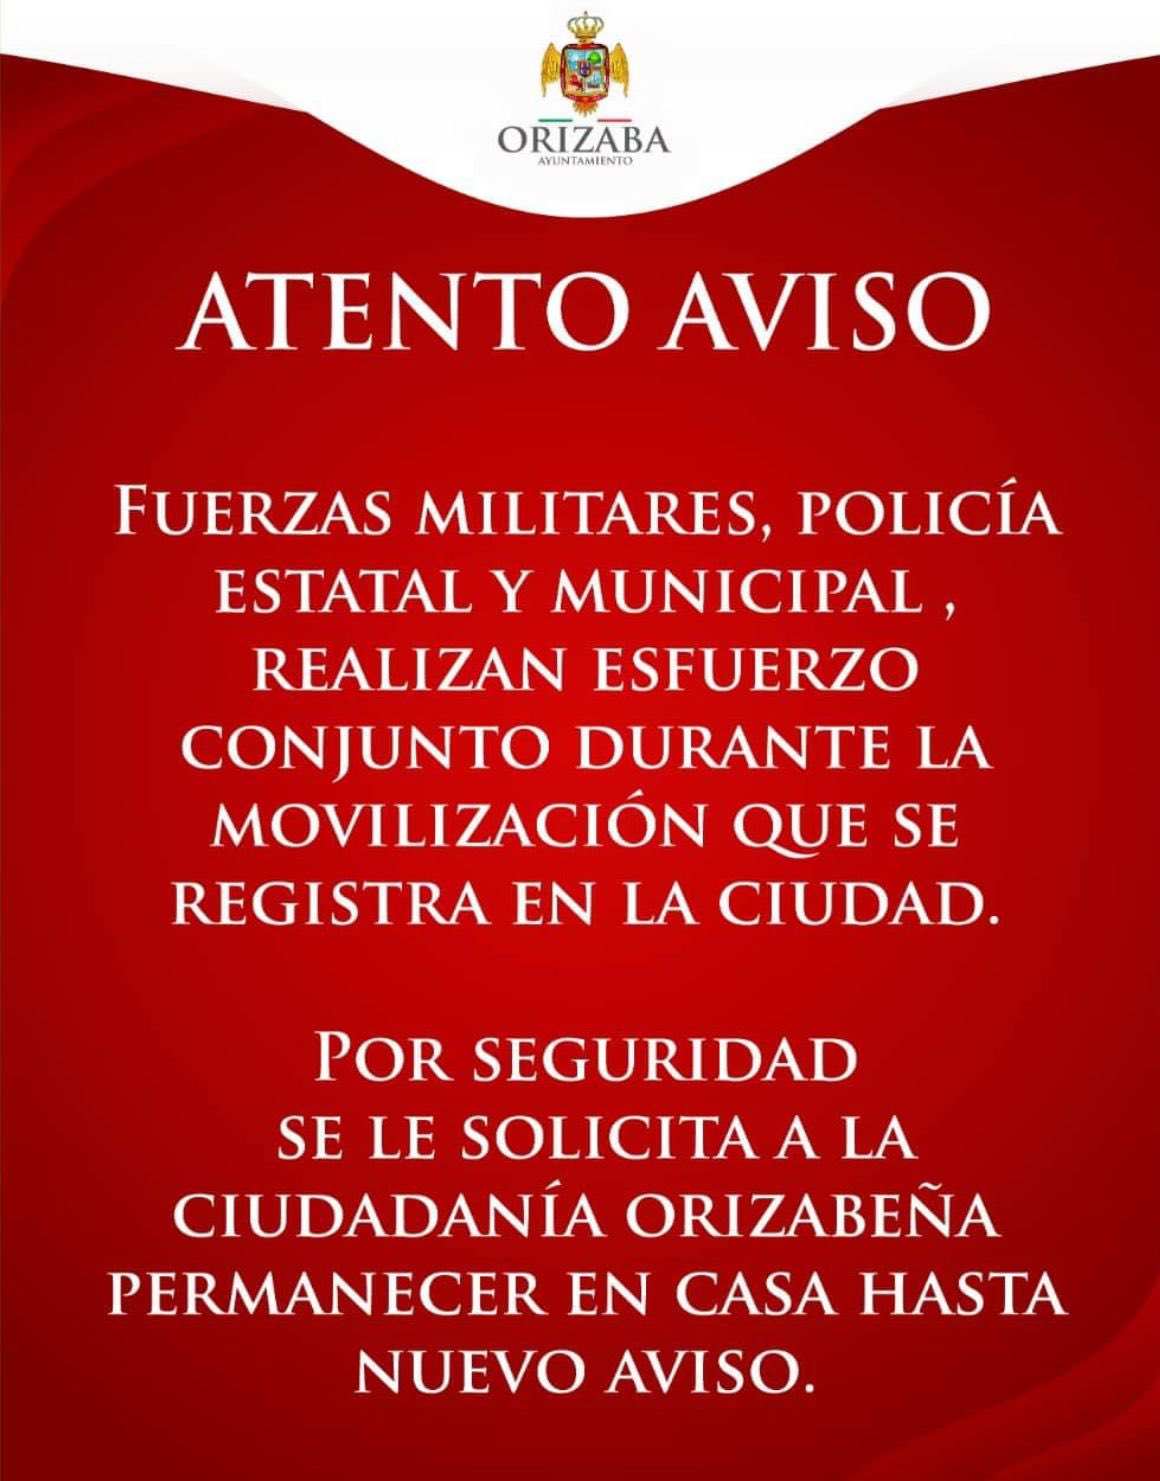 Autoridades de Veracruz pidieron a la población permanecer en sus hogares hasta nuevo aviso
(Foto: Ayuntamiento de Orizaba)